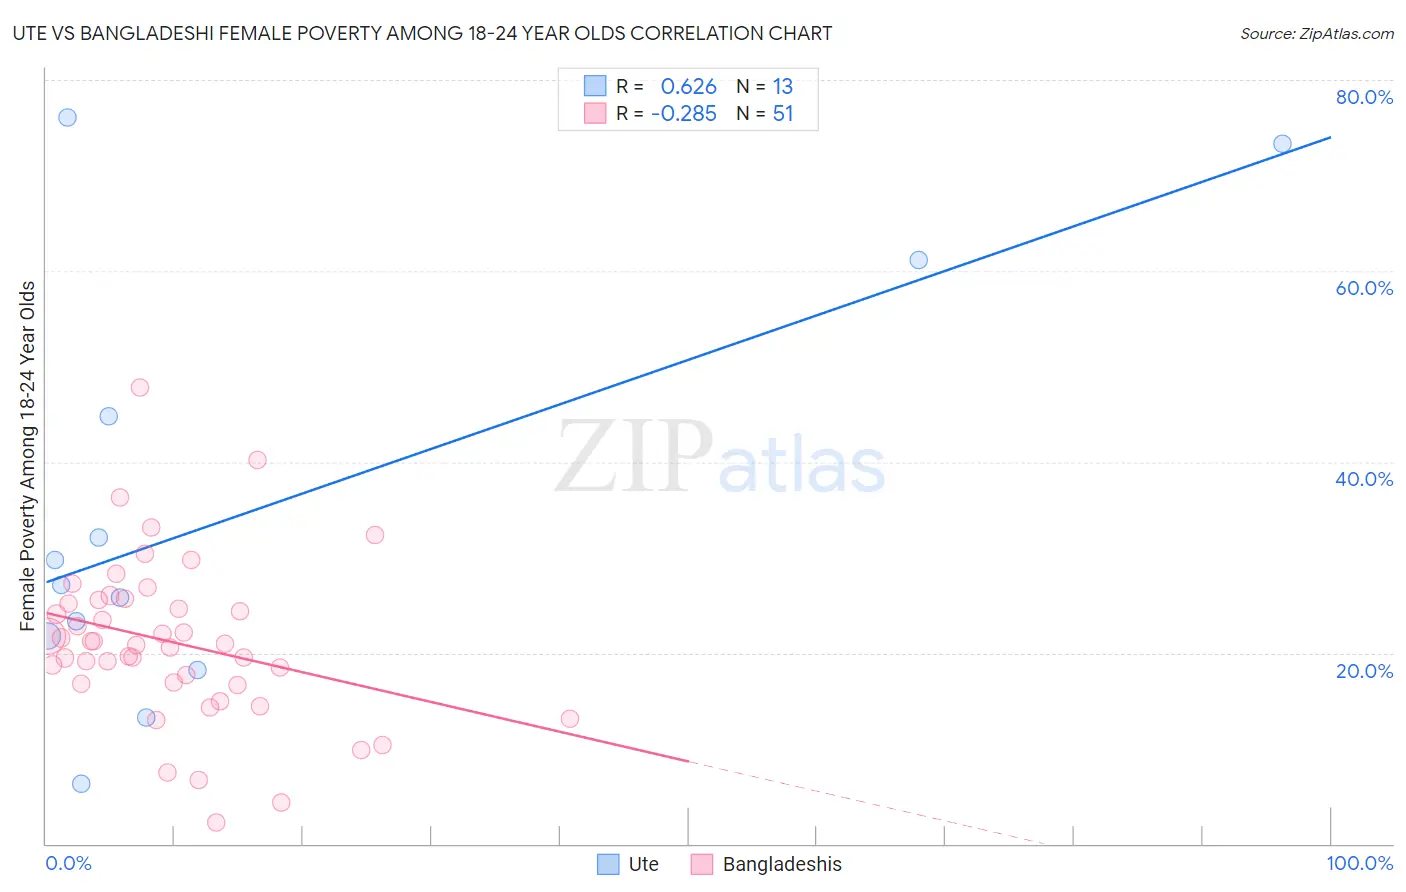 Ute vs Bangladeshi Female Poverty Among 18-24 Year Olds